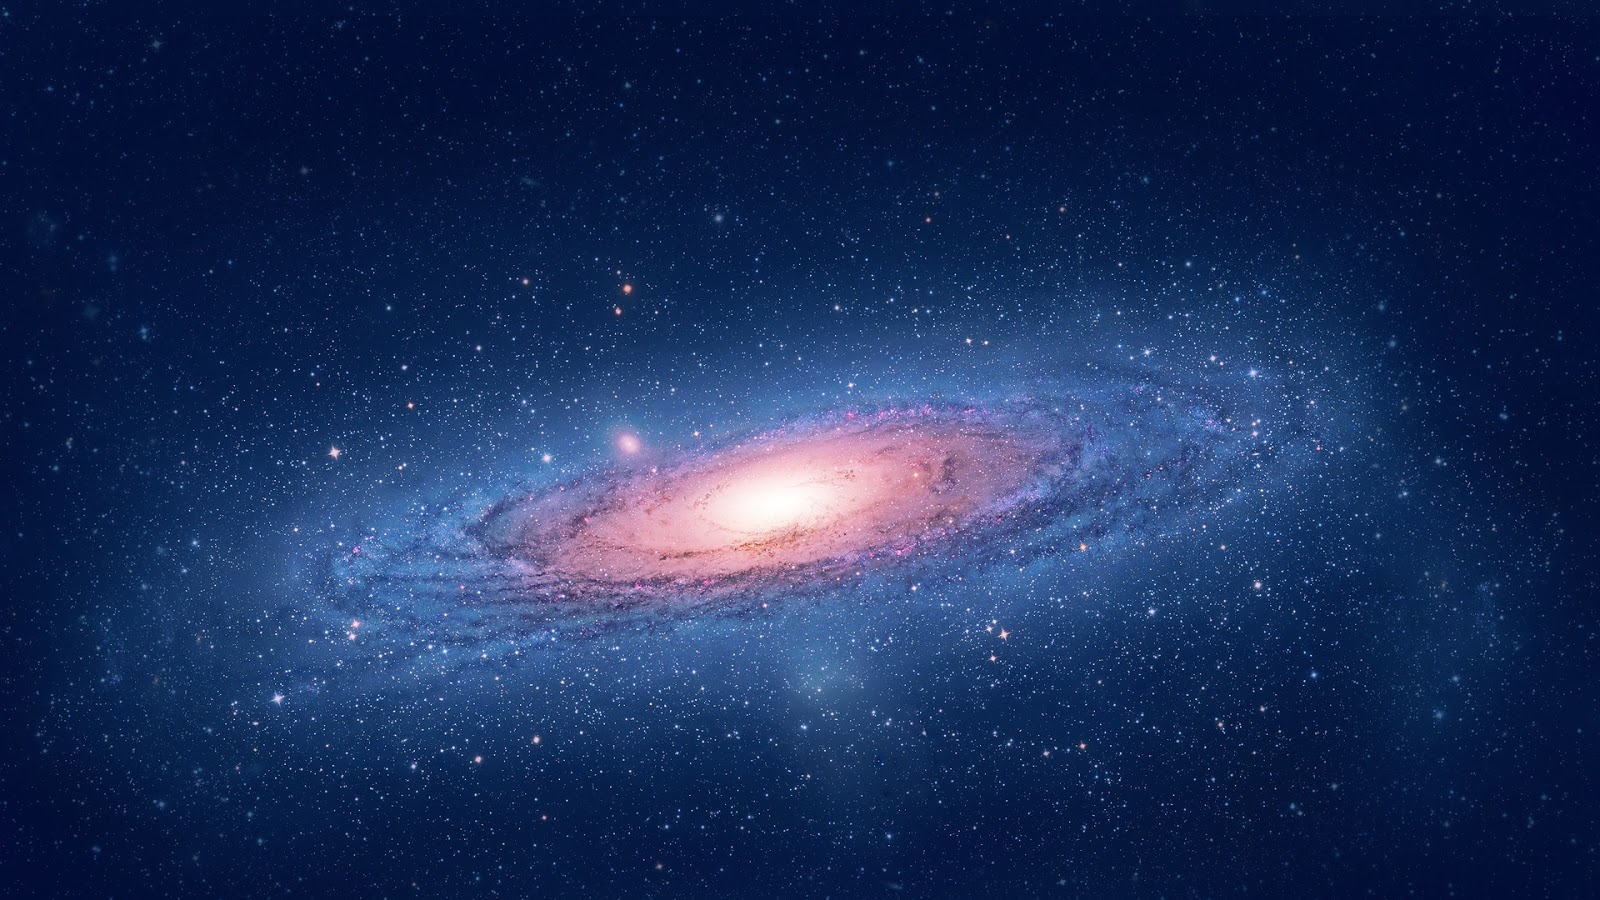 andromeda tapete,galaxis,atmosphäre,spiralgalaxie,weltraum,blau